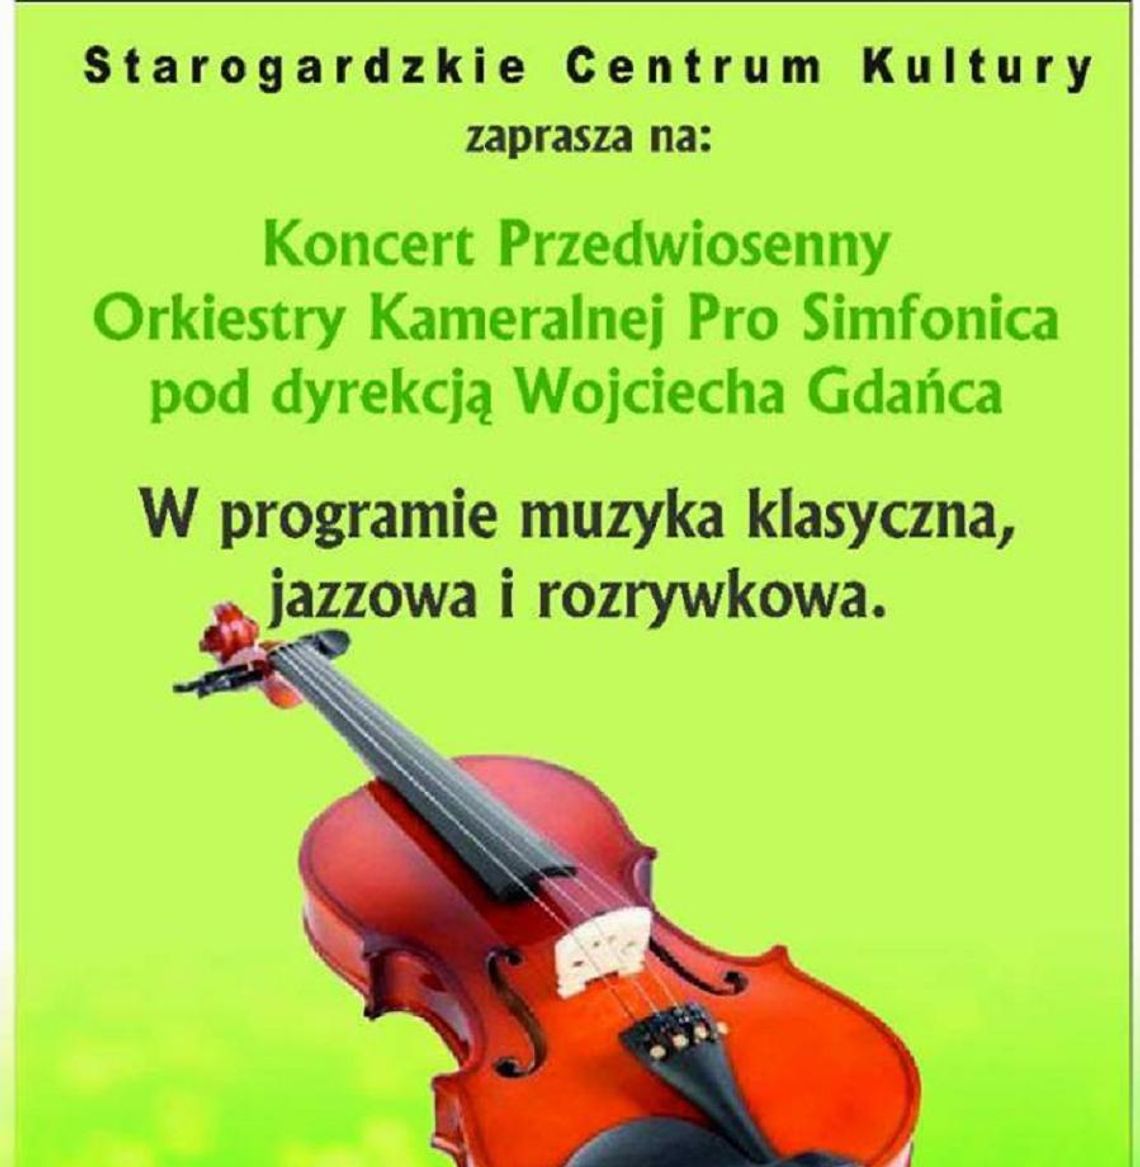 Koncert Przedwiosenny Orkiestry Kameralnej Pro Simfonica